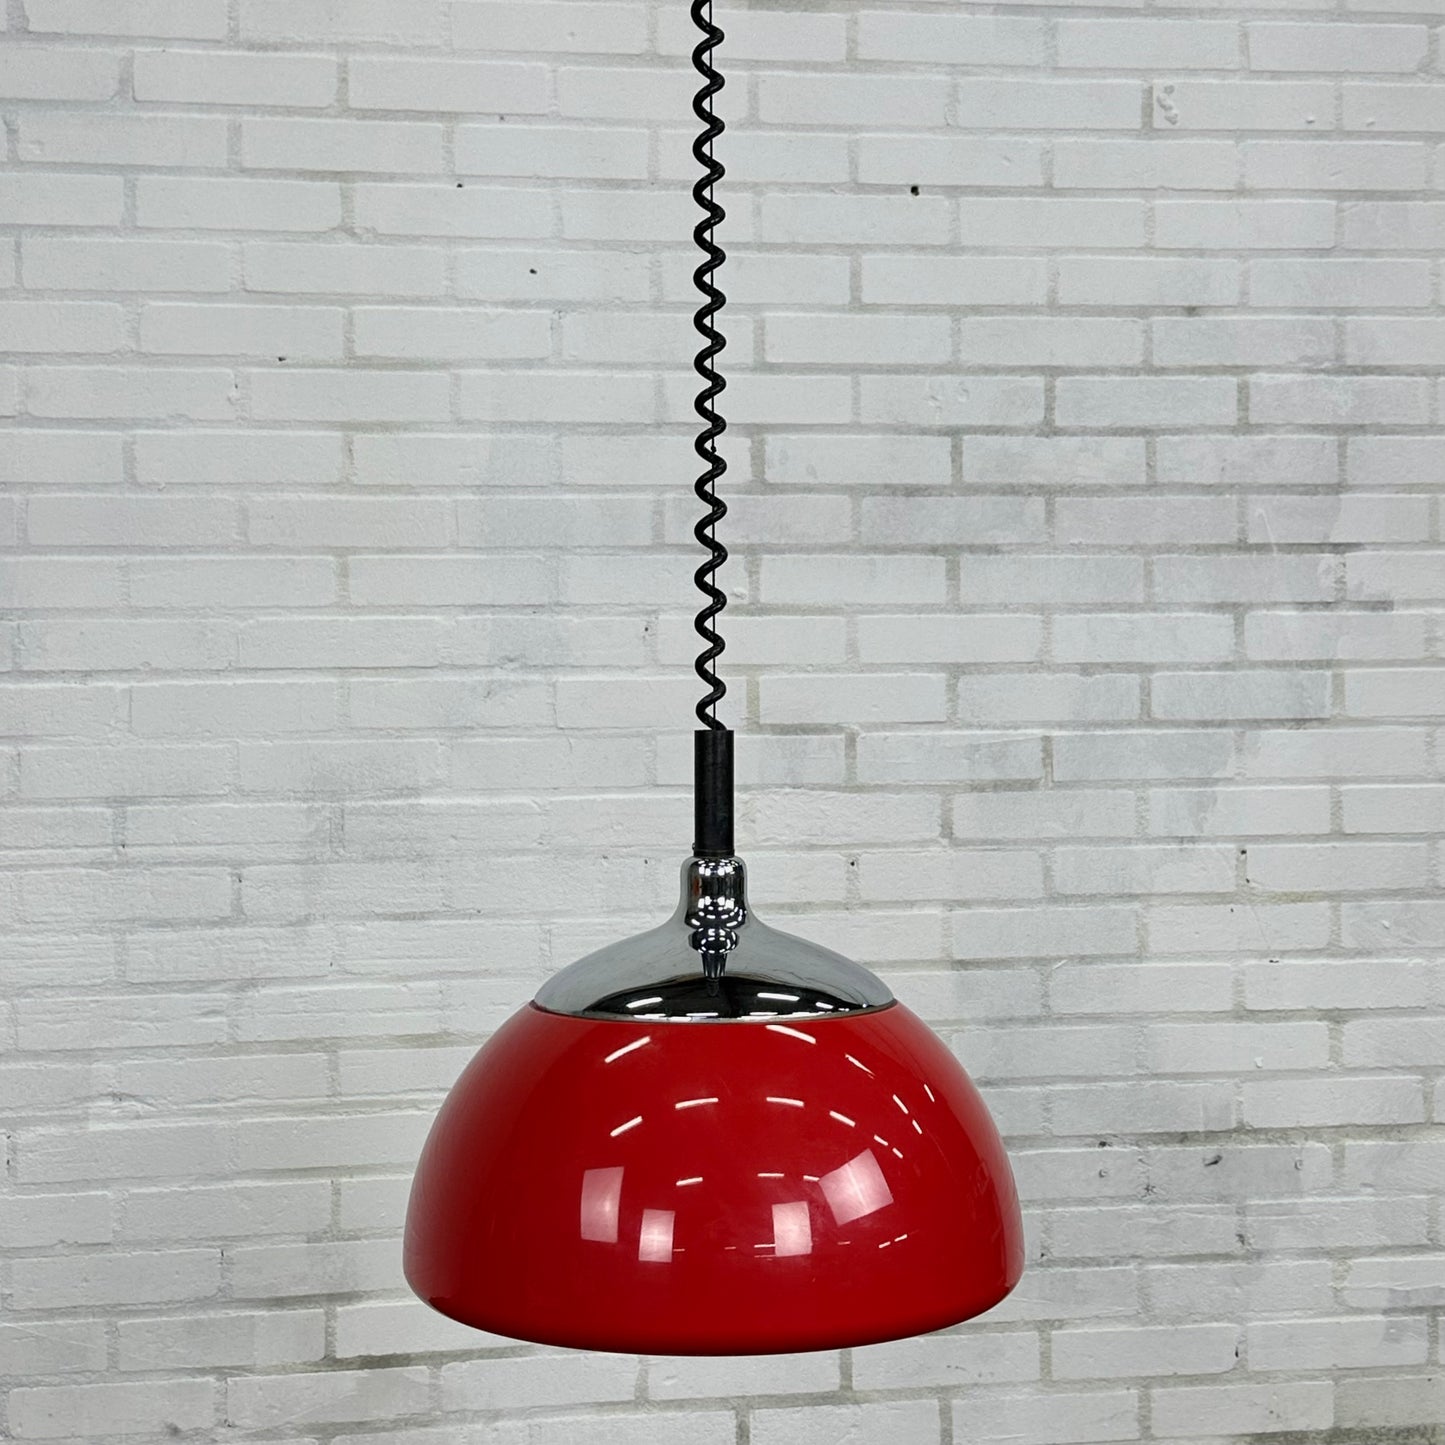 Rode space age hanglamp van Cosack Leuchten